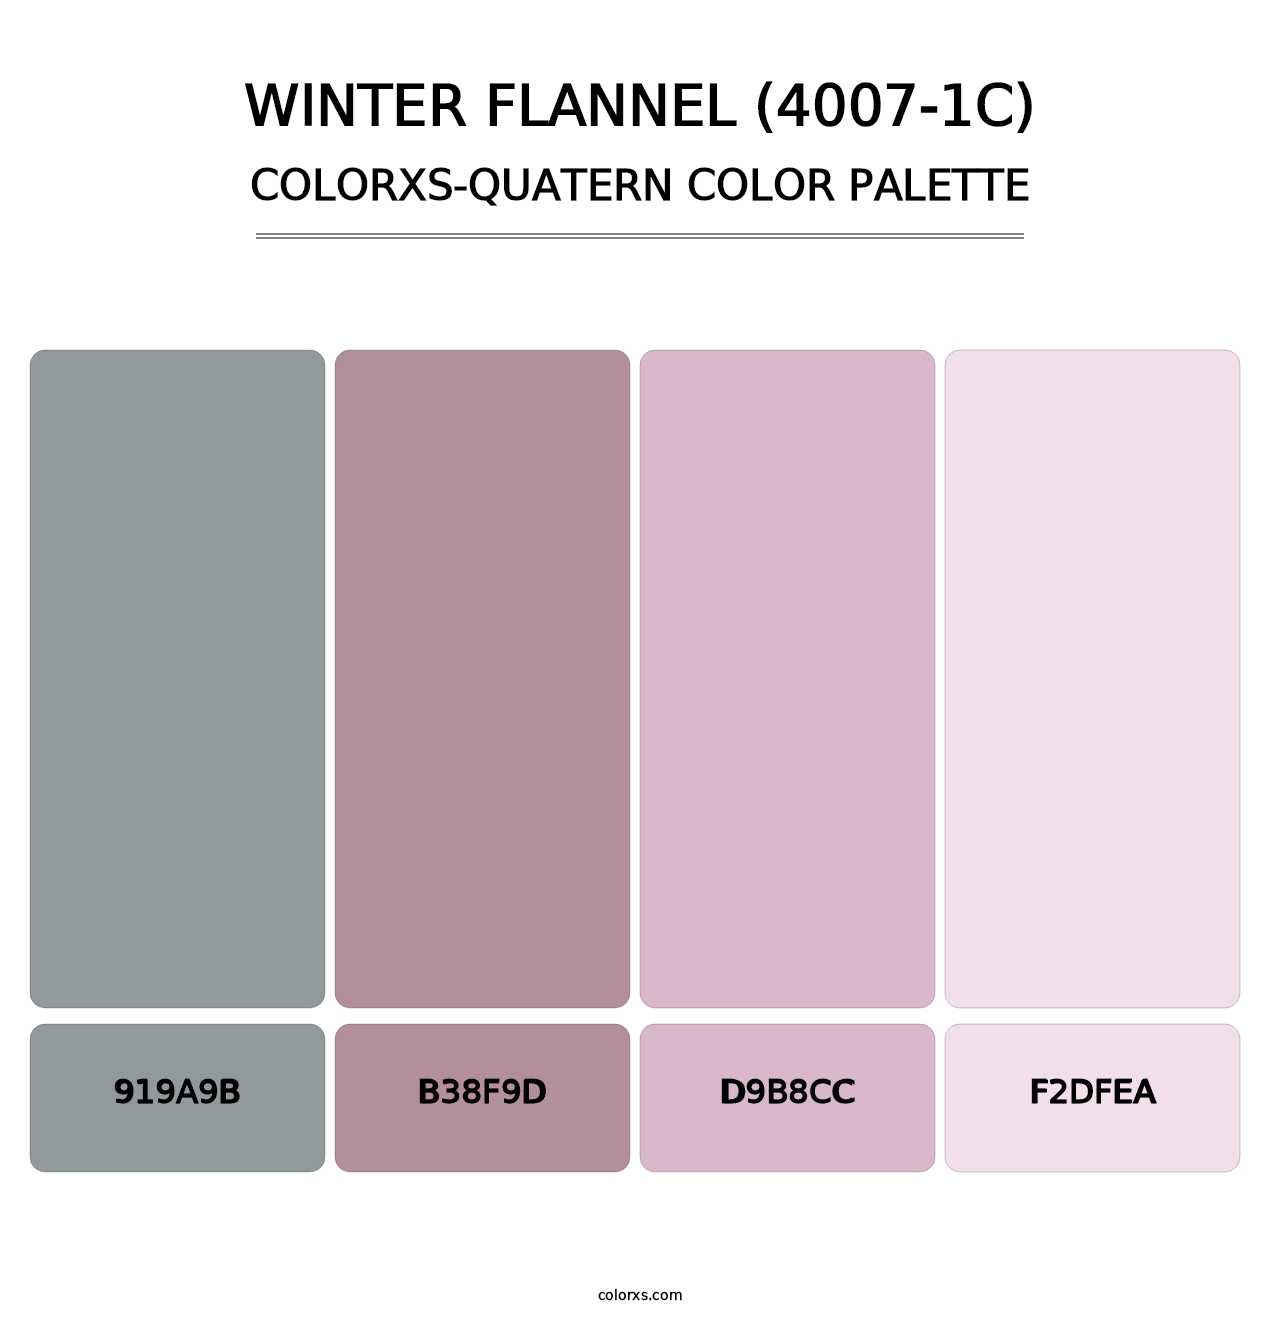 Winter Flannel (4007-1C) - Colorxs Quatern Palette